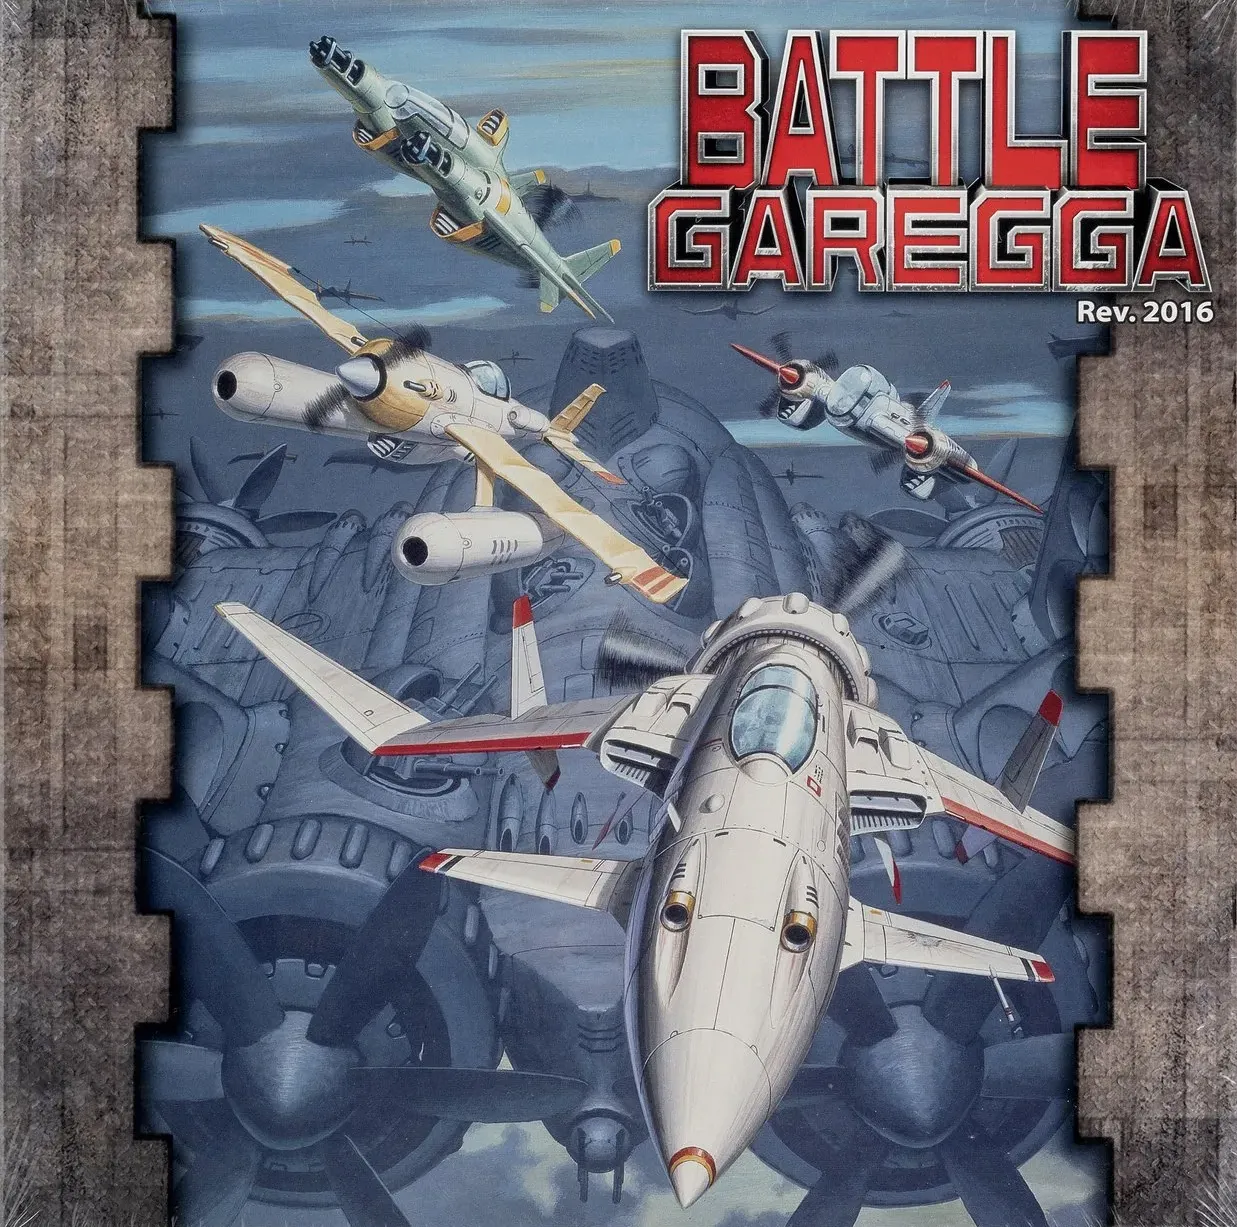 Battle Garegga [Collector's Edition] Video Game